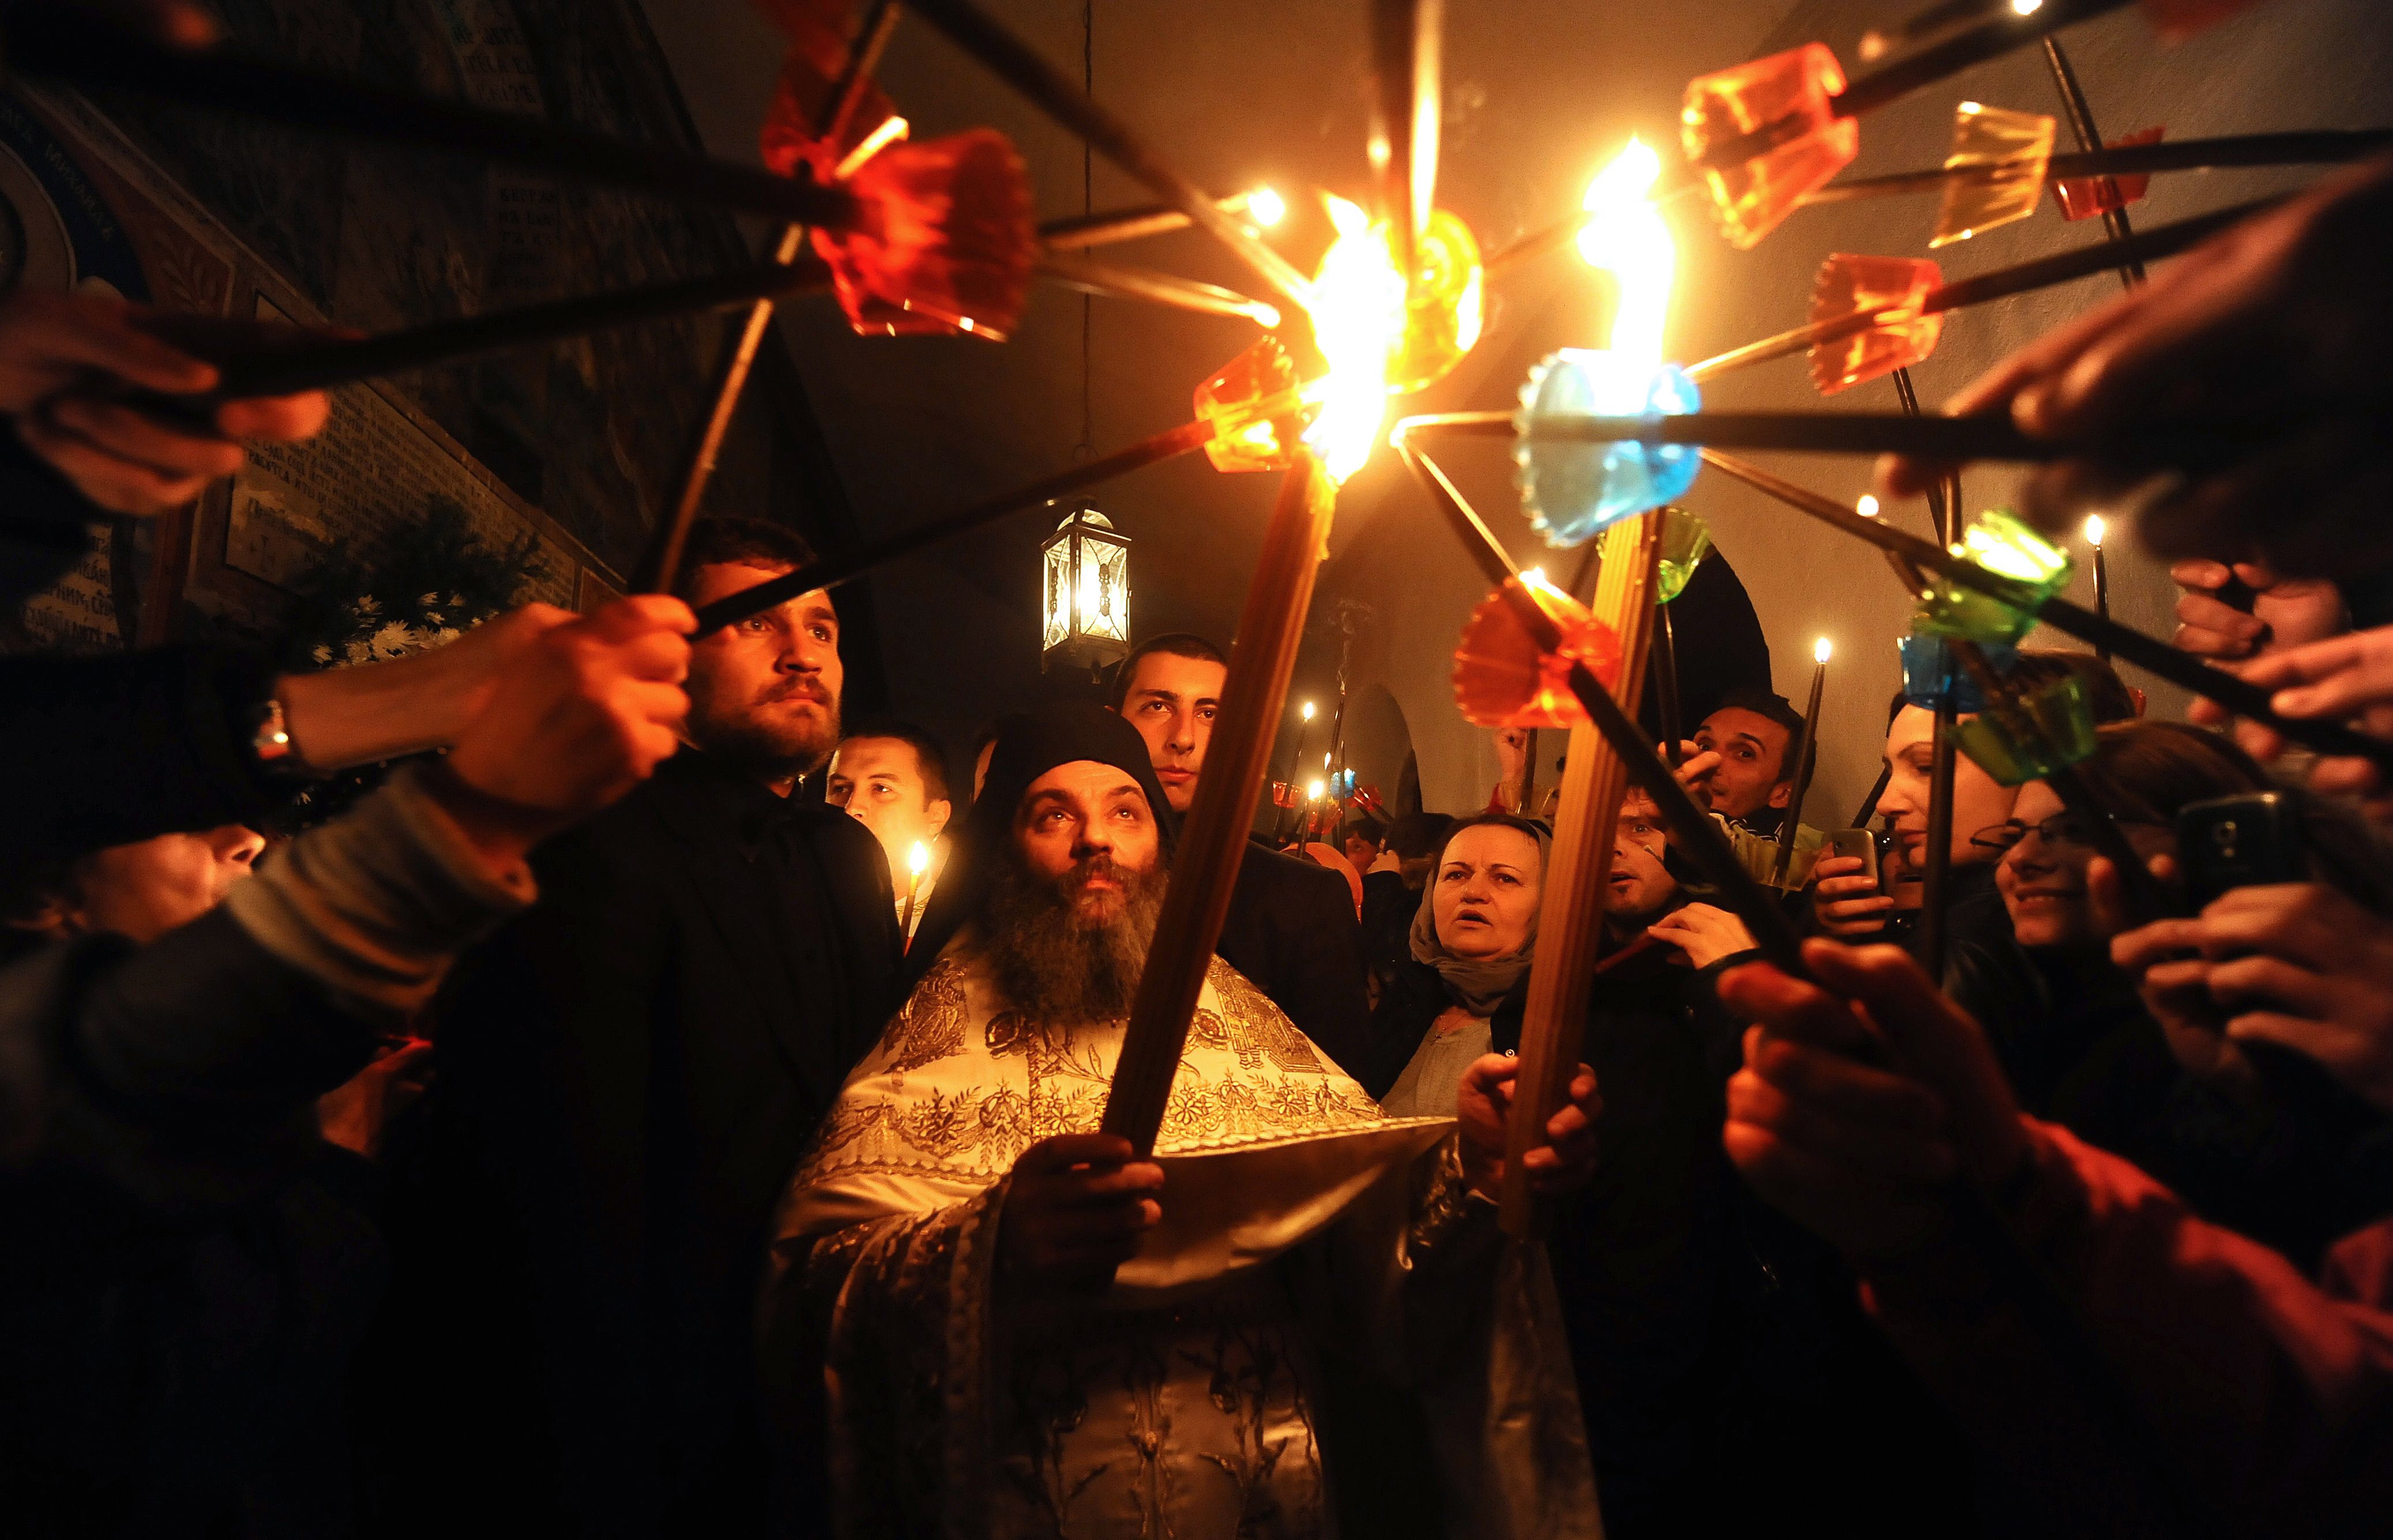 Lumina Sfanta se va aprinde la Ierusalim in Sambata Mare. Obiceiurile din jurul ceremoniei